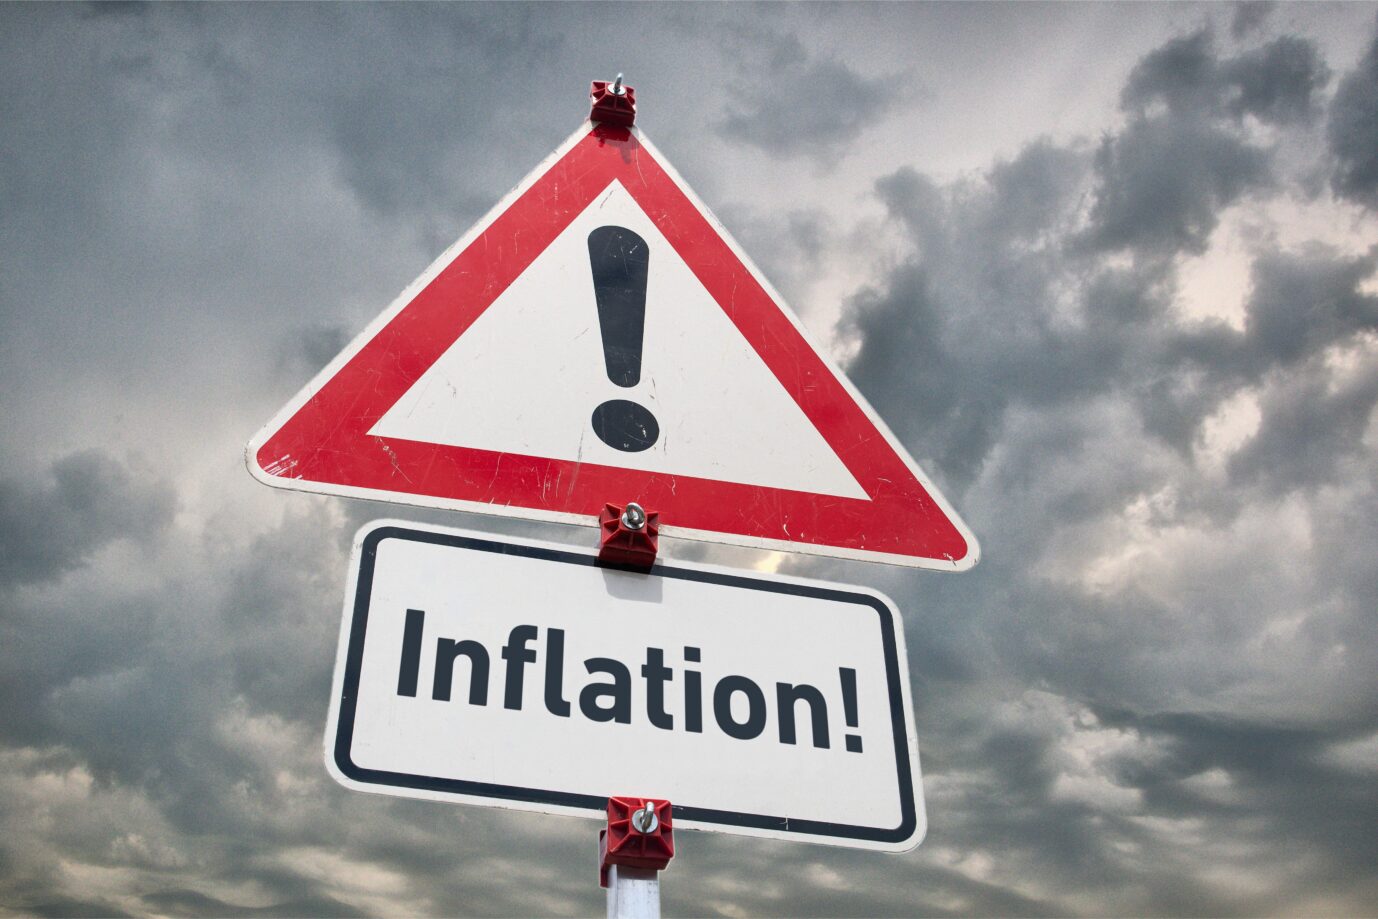 Die Sparkassen sehr die Sparfähigkeit der Deutschen durch die Inflation in Gefahr.